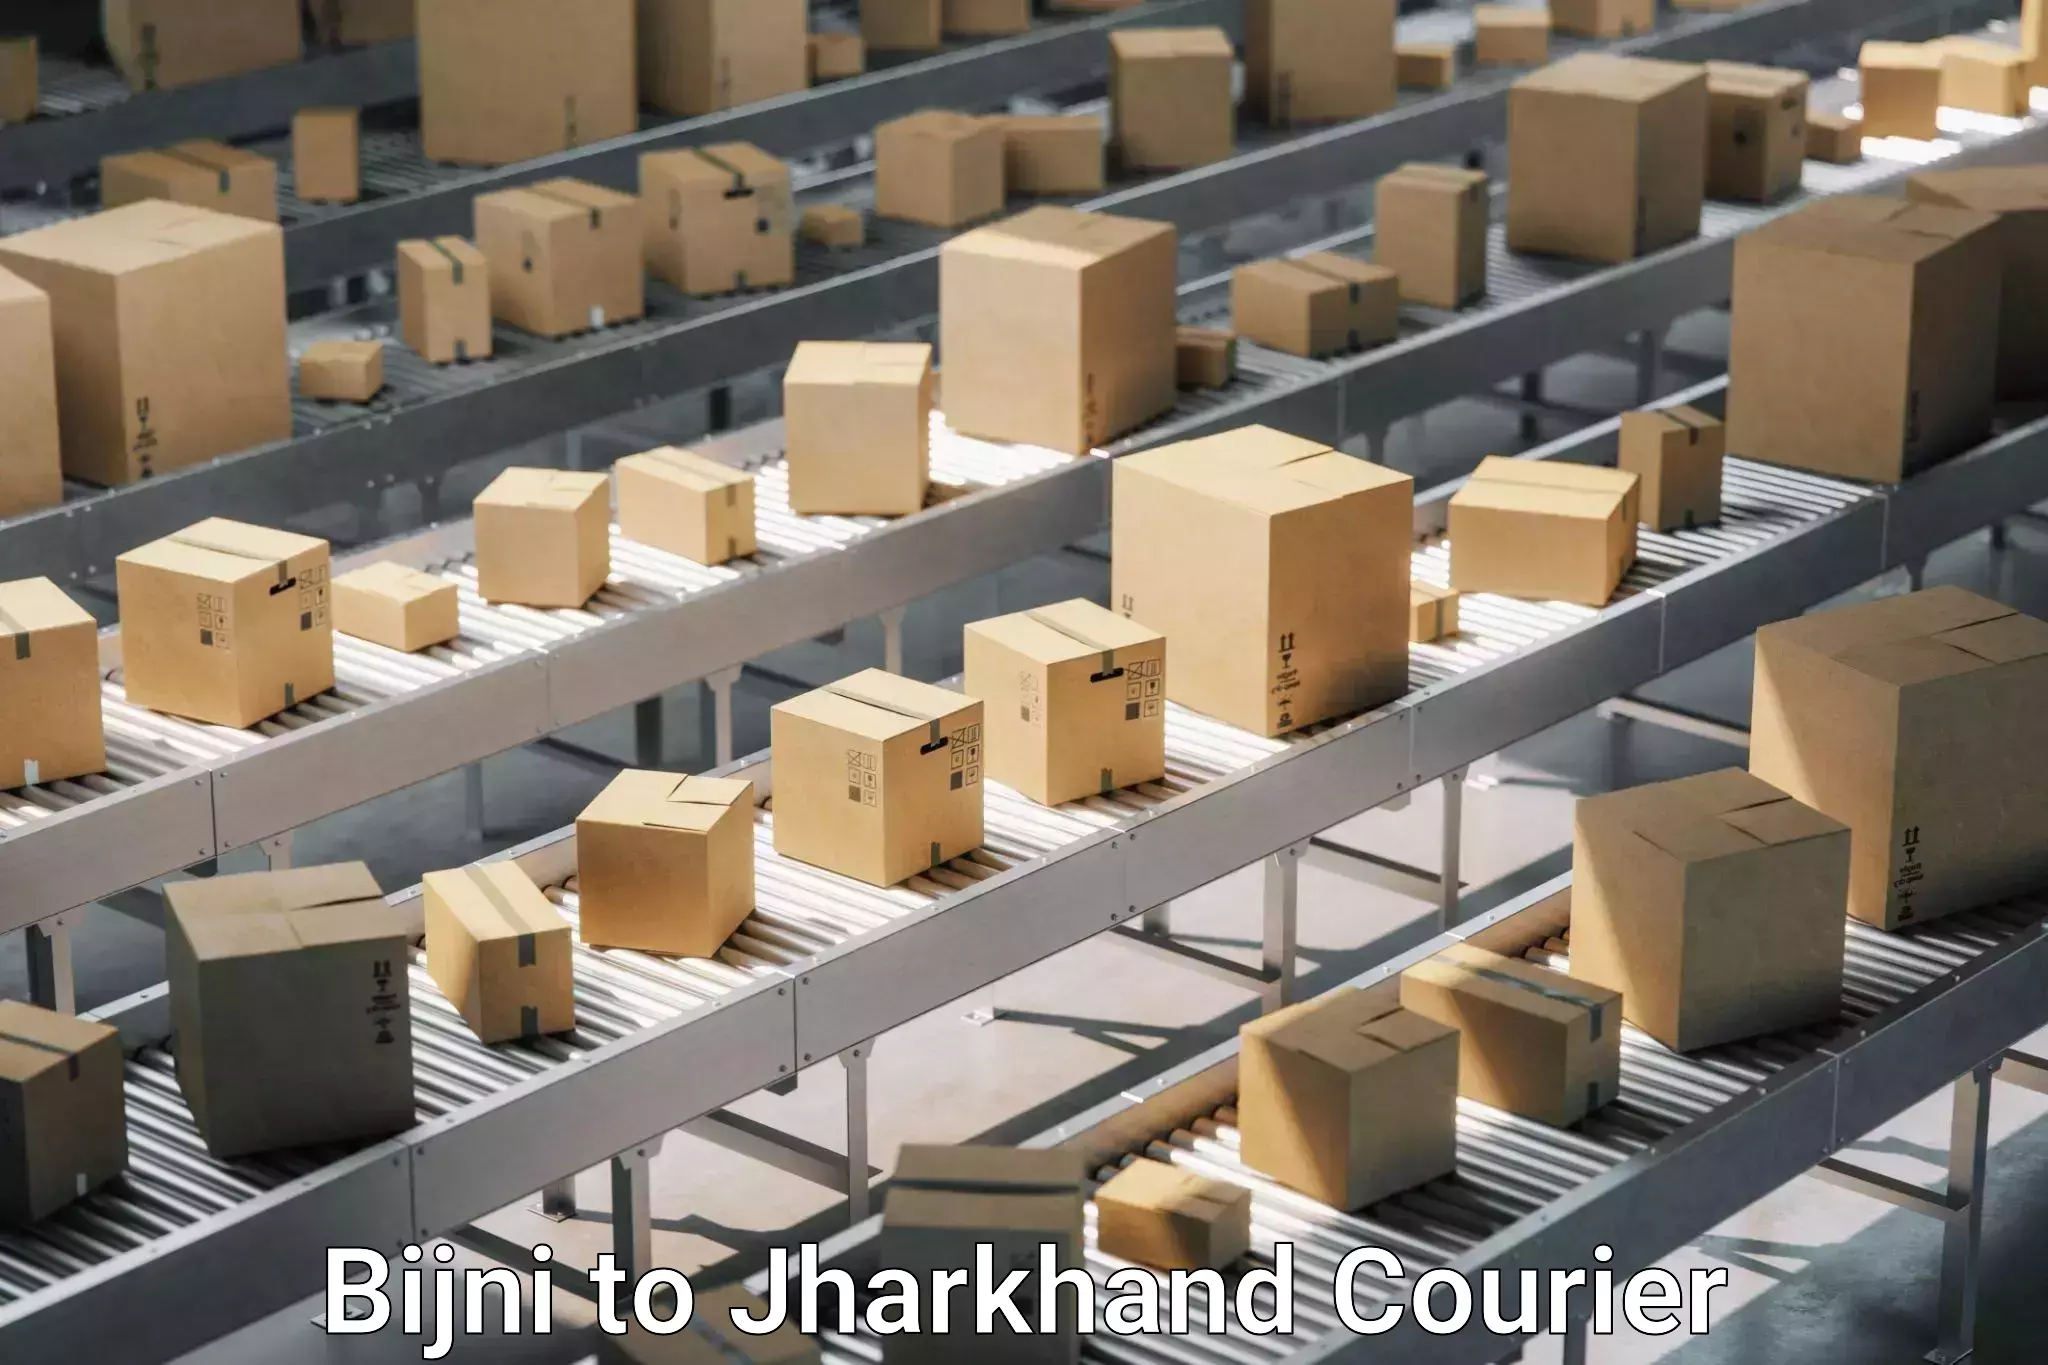 Skilled furniture transporters Bijni to Jharkhand